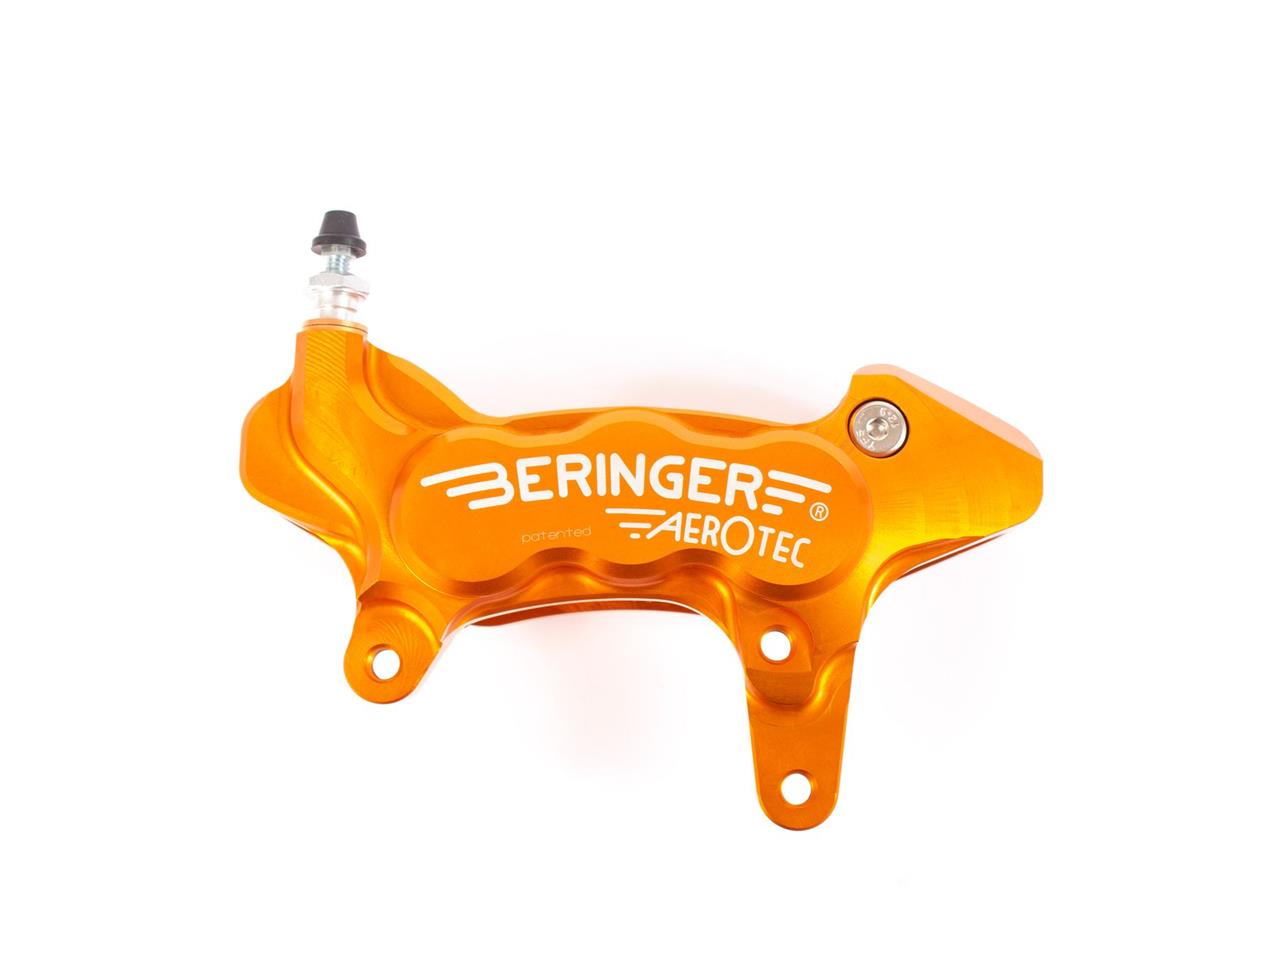 Étrier de frein axial gauche Beringer Aerotec®, 6 pistons, diamètre 27mm, couleur orange